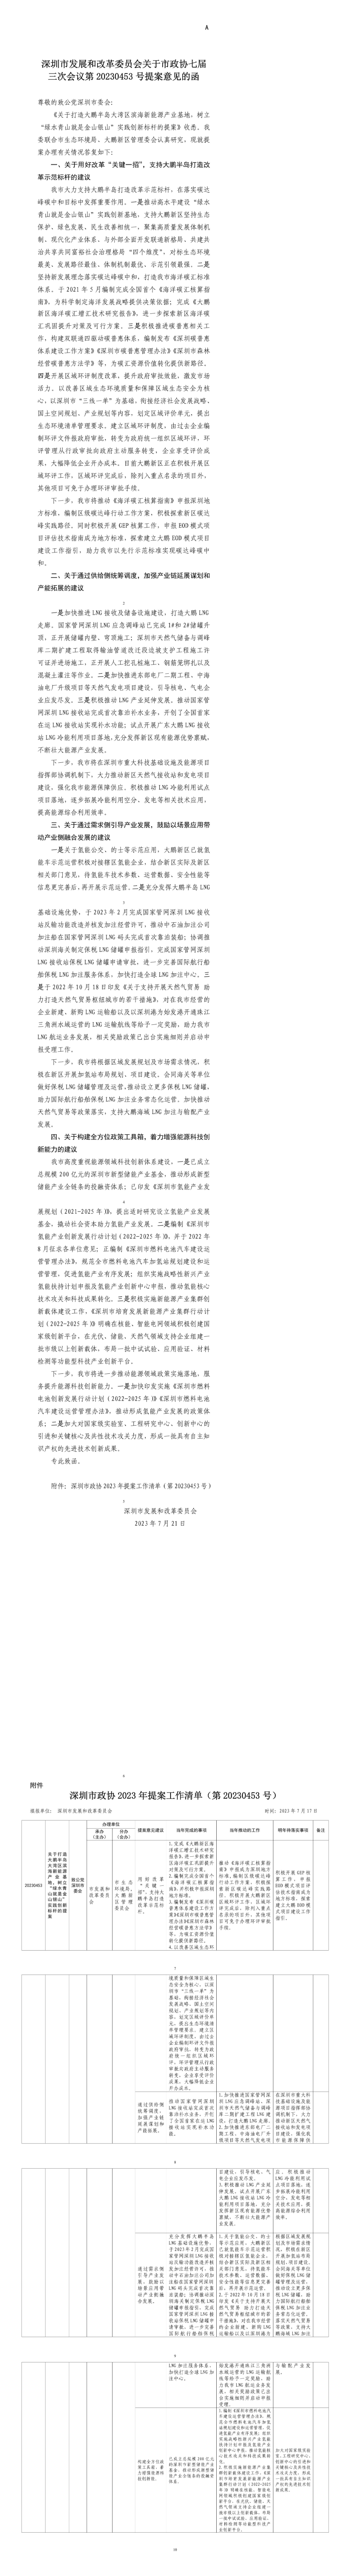 深圳市发展和改革委员会关于市政协七届三次会议第20230453号提案答复意见的函.jpg